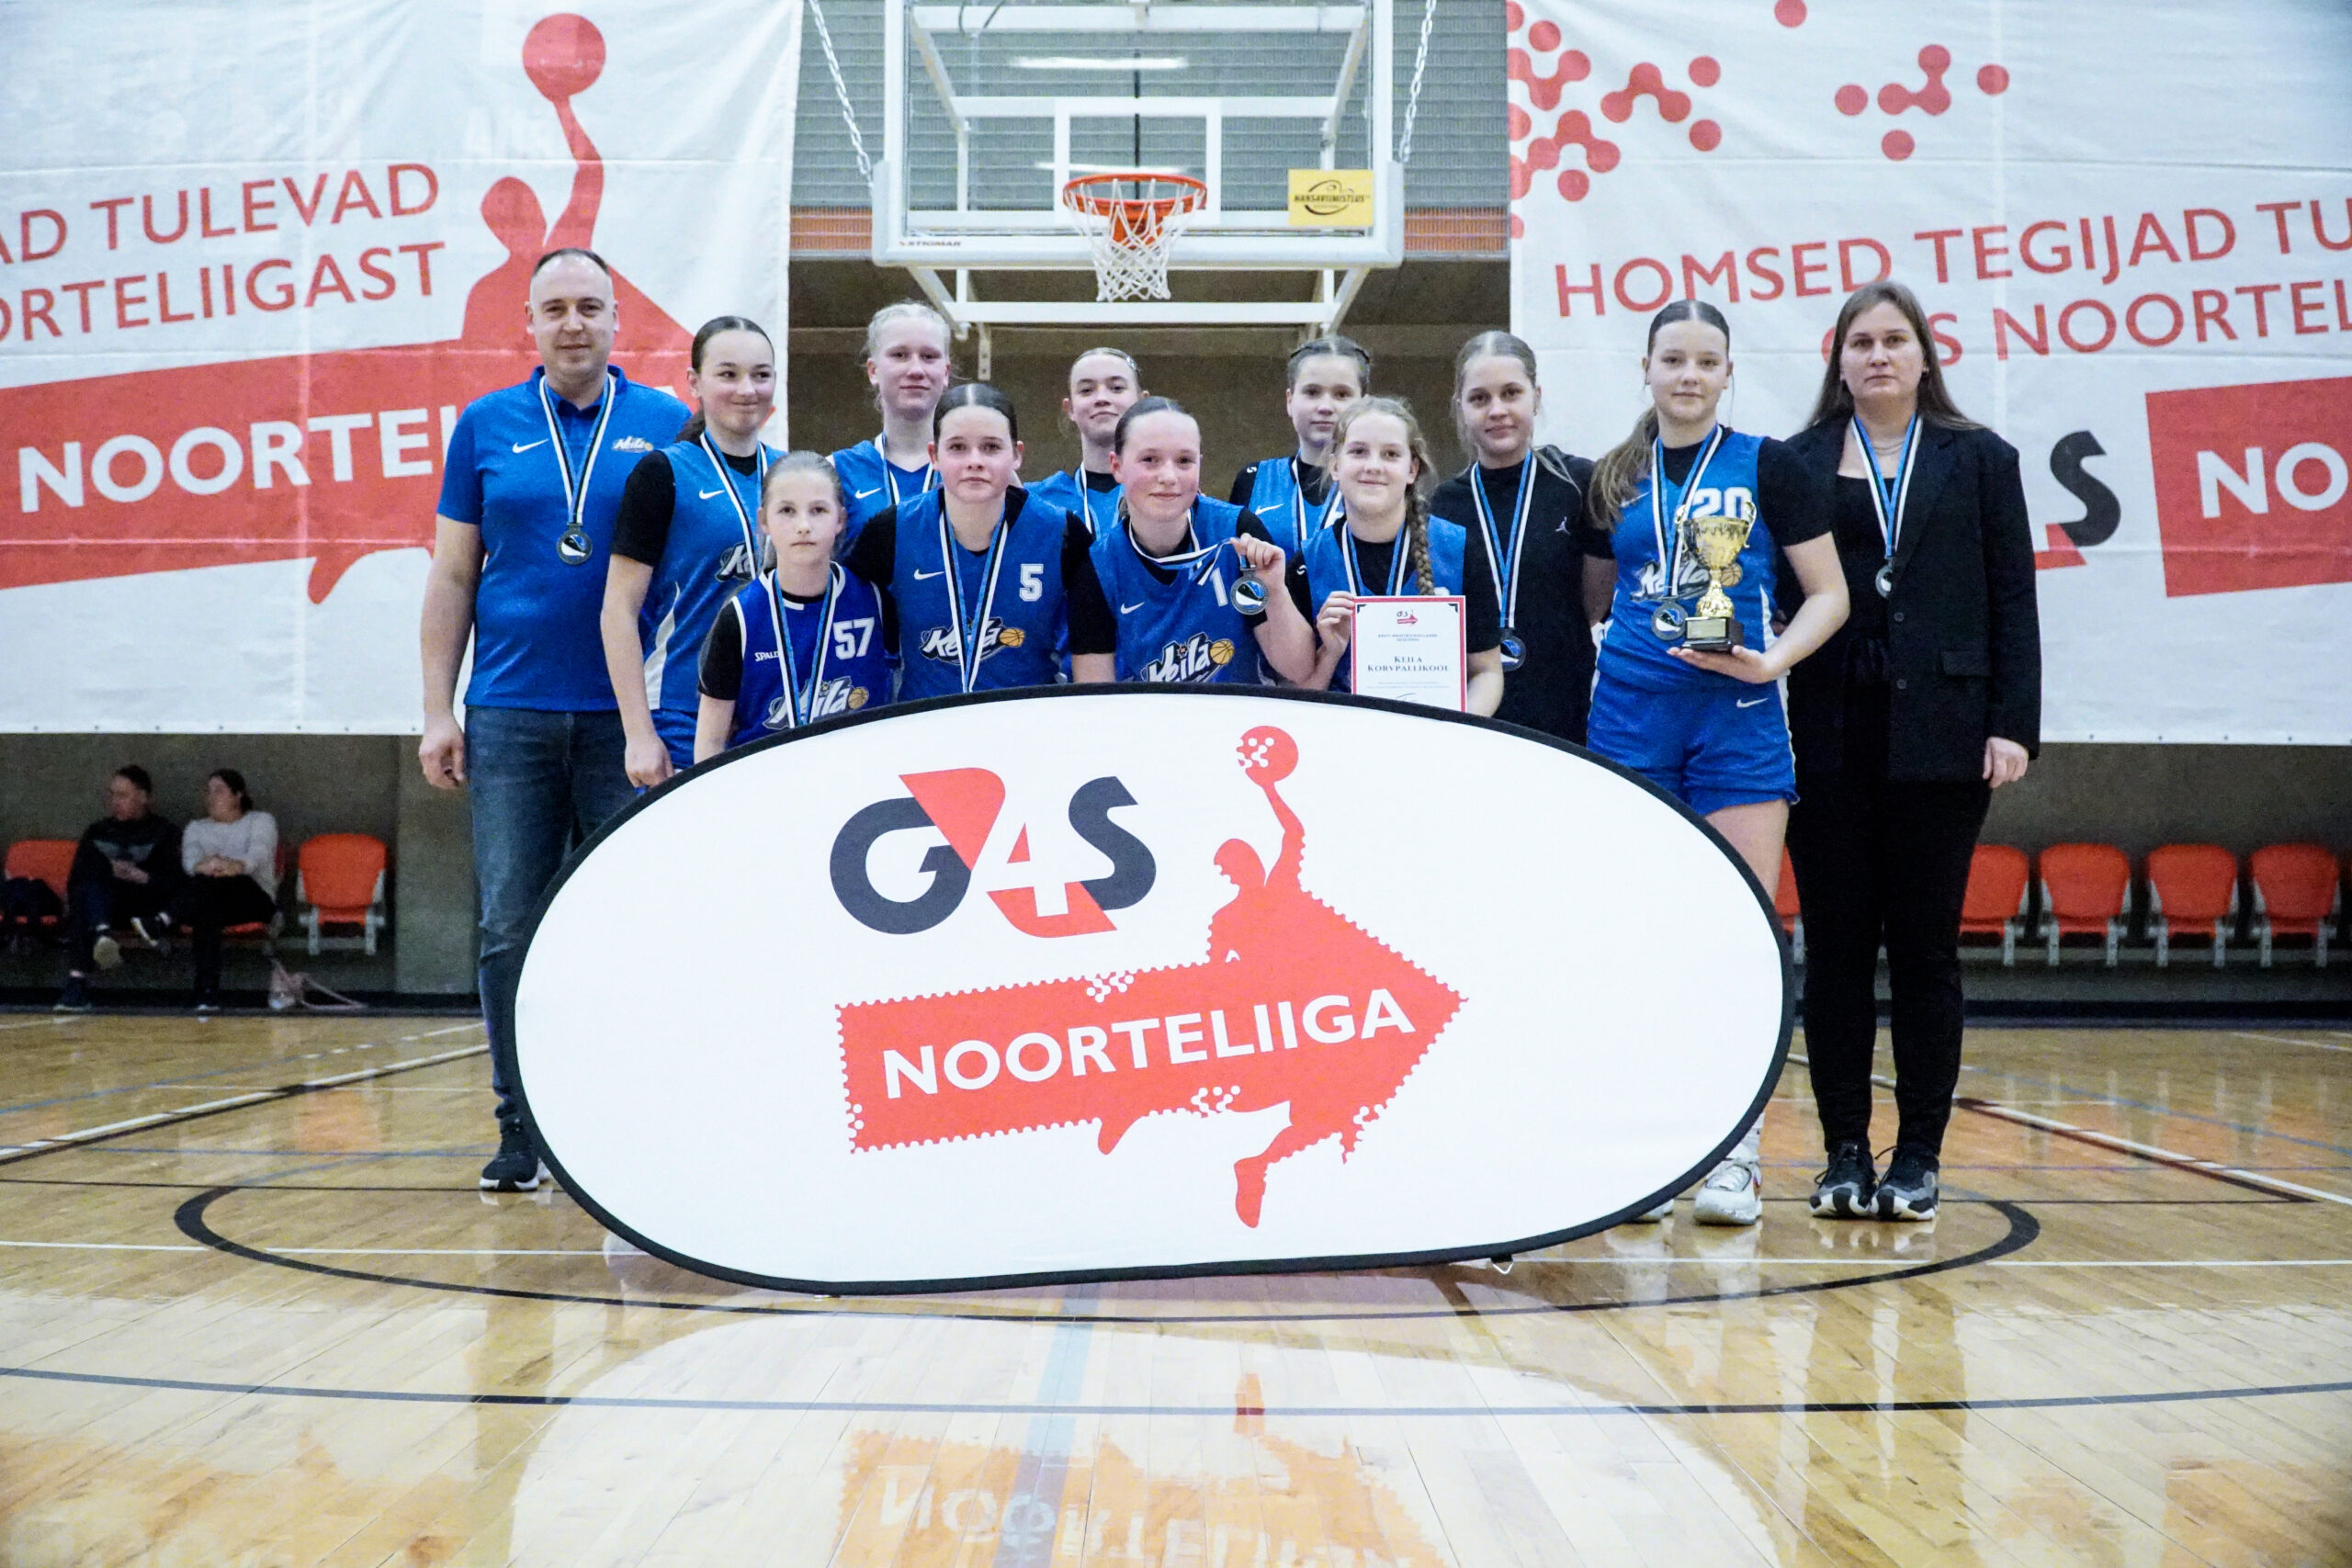 Keila Korvpallikooli U14 tüdrukud saavutasid Eesti meistrivõistlustel suurepärase 2. koha! Võistkonda kuulusid Rebecca Ots, Heleriin Kuusler, Saskia Reemets, Ni